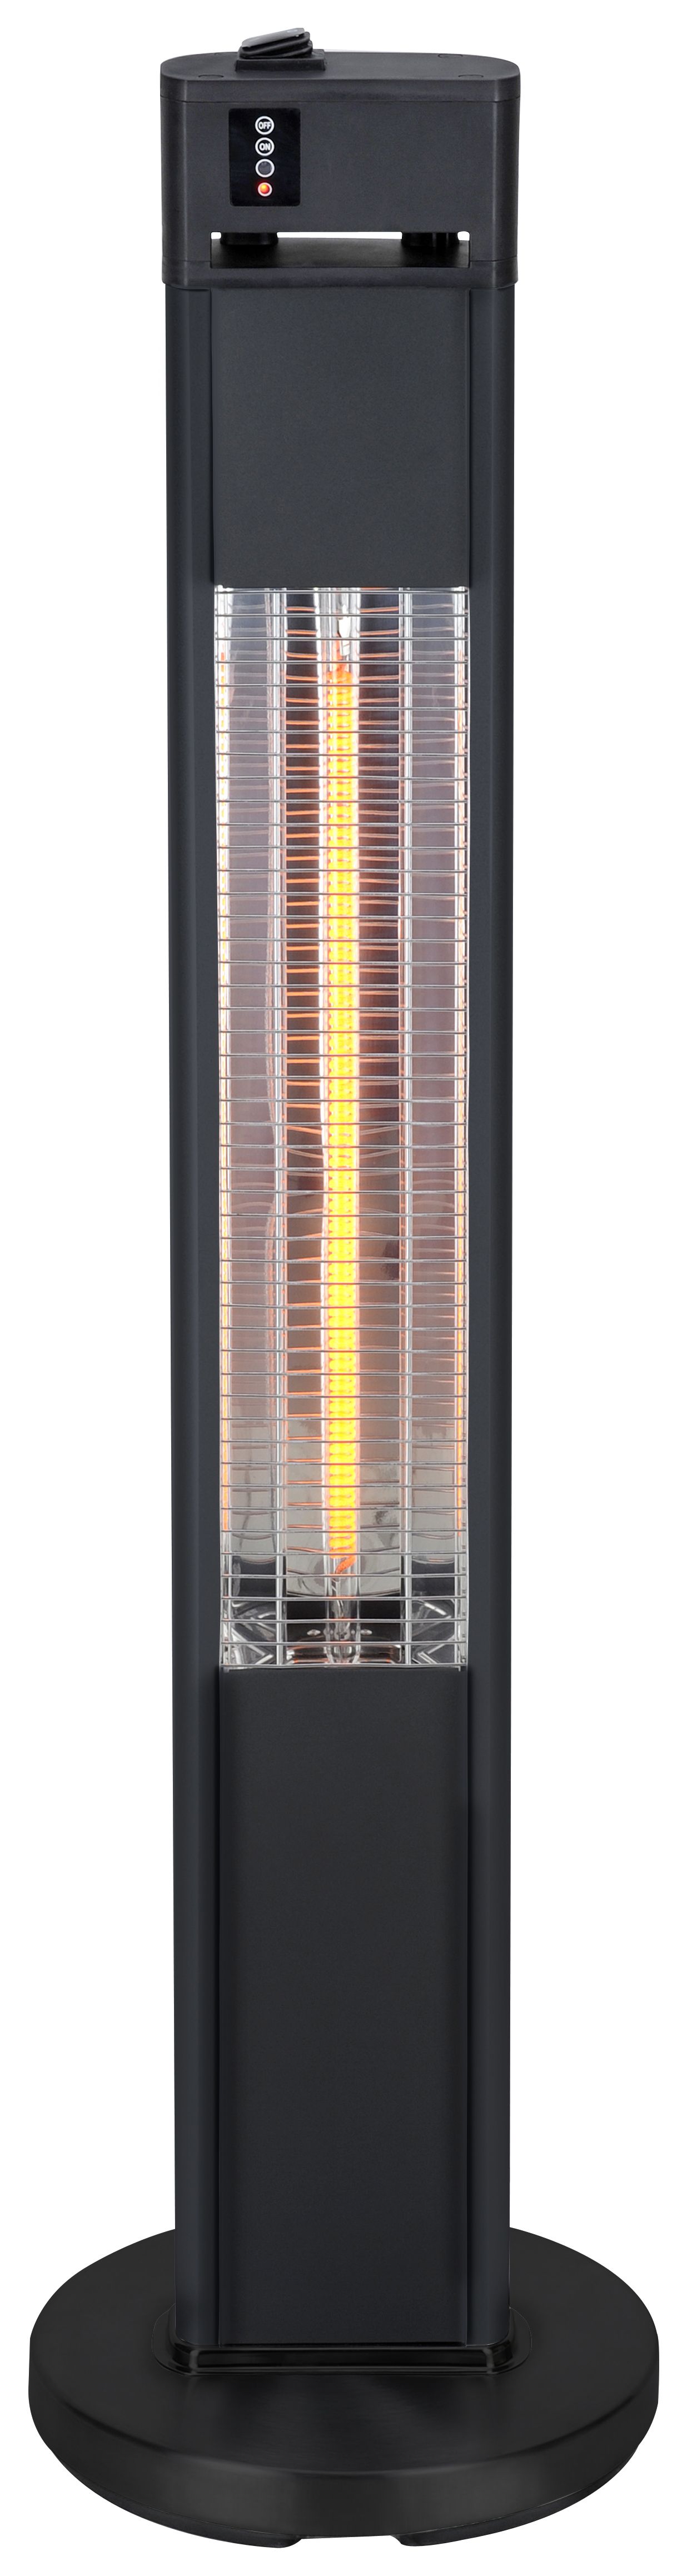 Image of Blaze Floor Standing Electric Outdoor Heater - 1600W